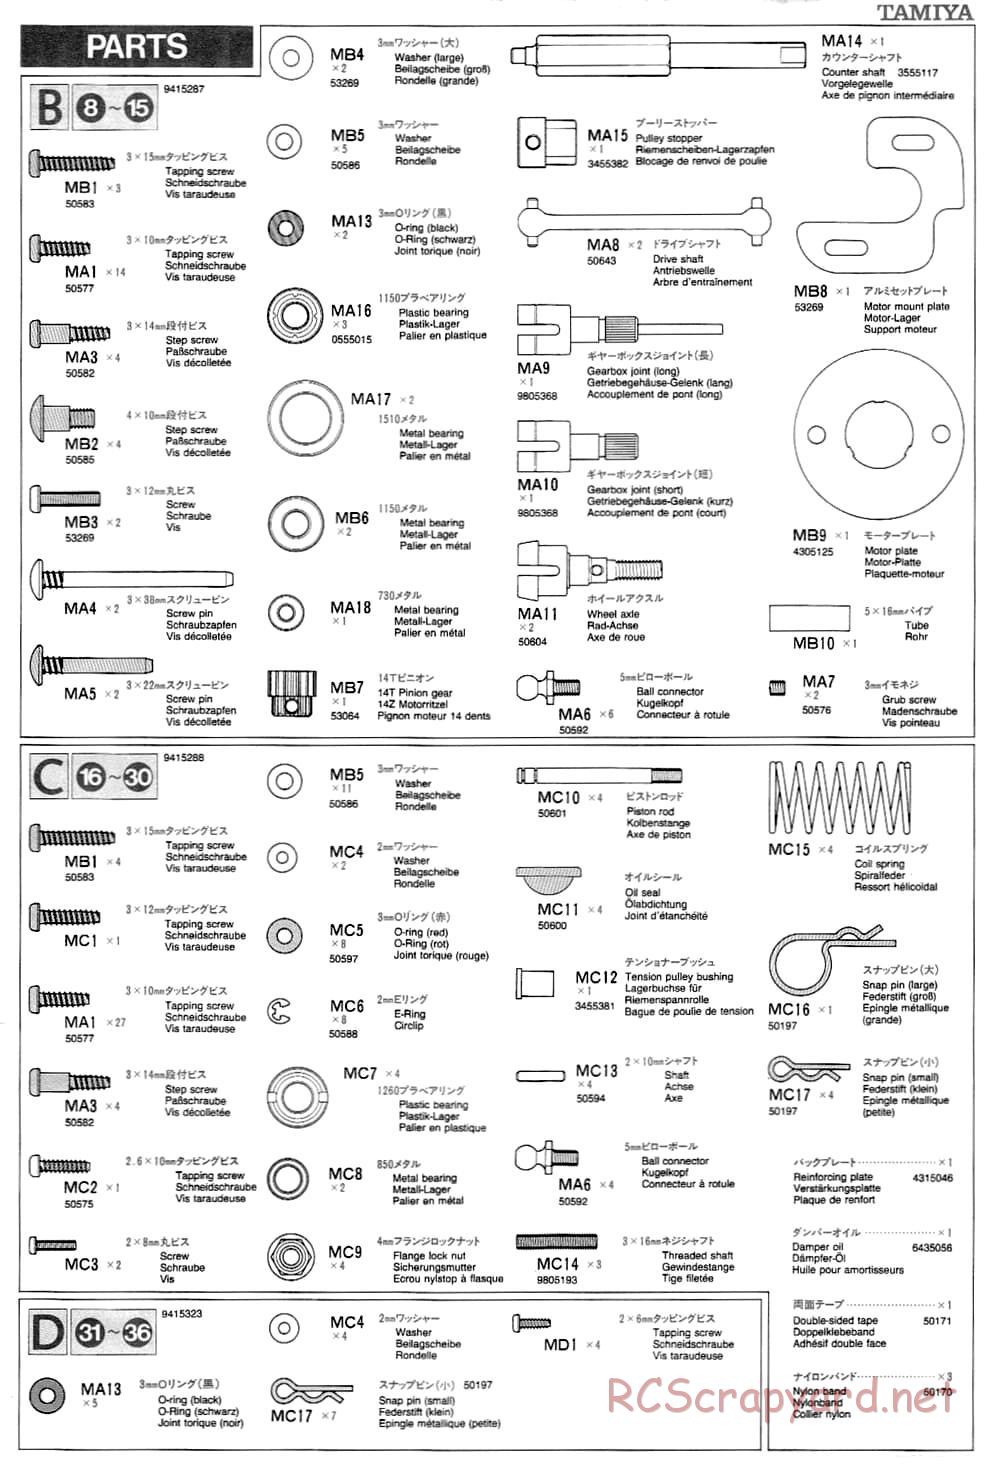 Tamiya - TA-03F Chassis - Manual - Page 23